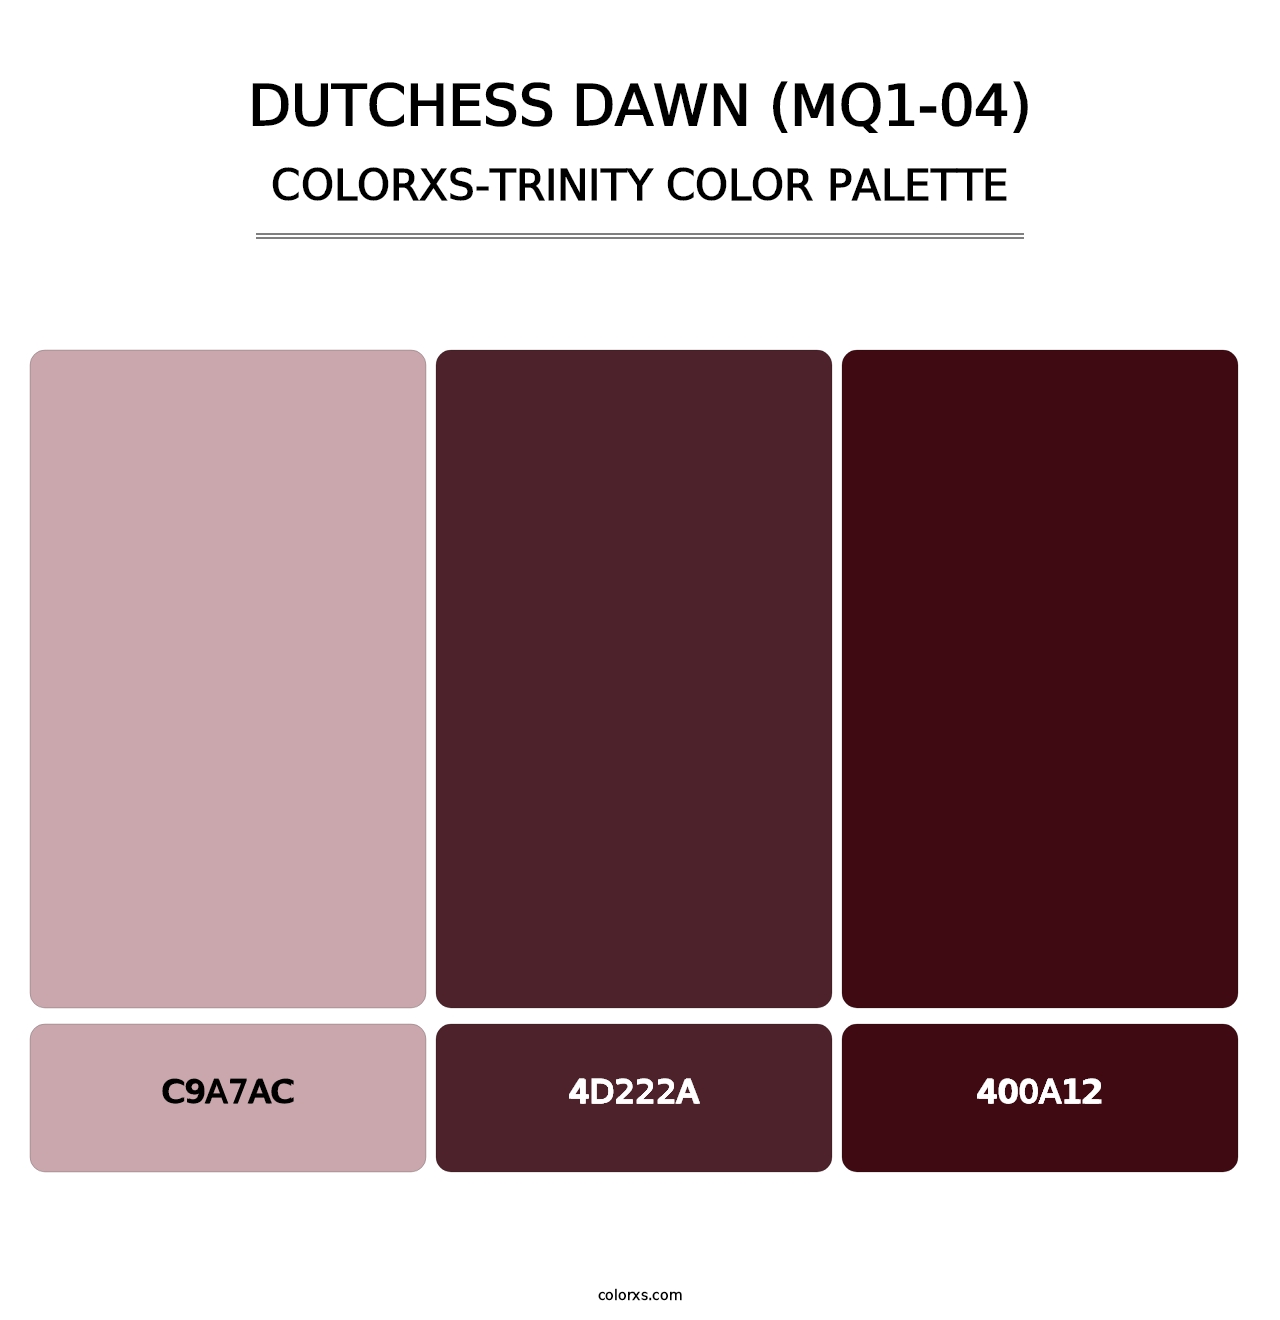 Dutchess Dawn (MQ1-04) - Colorxs Trinity Palette